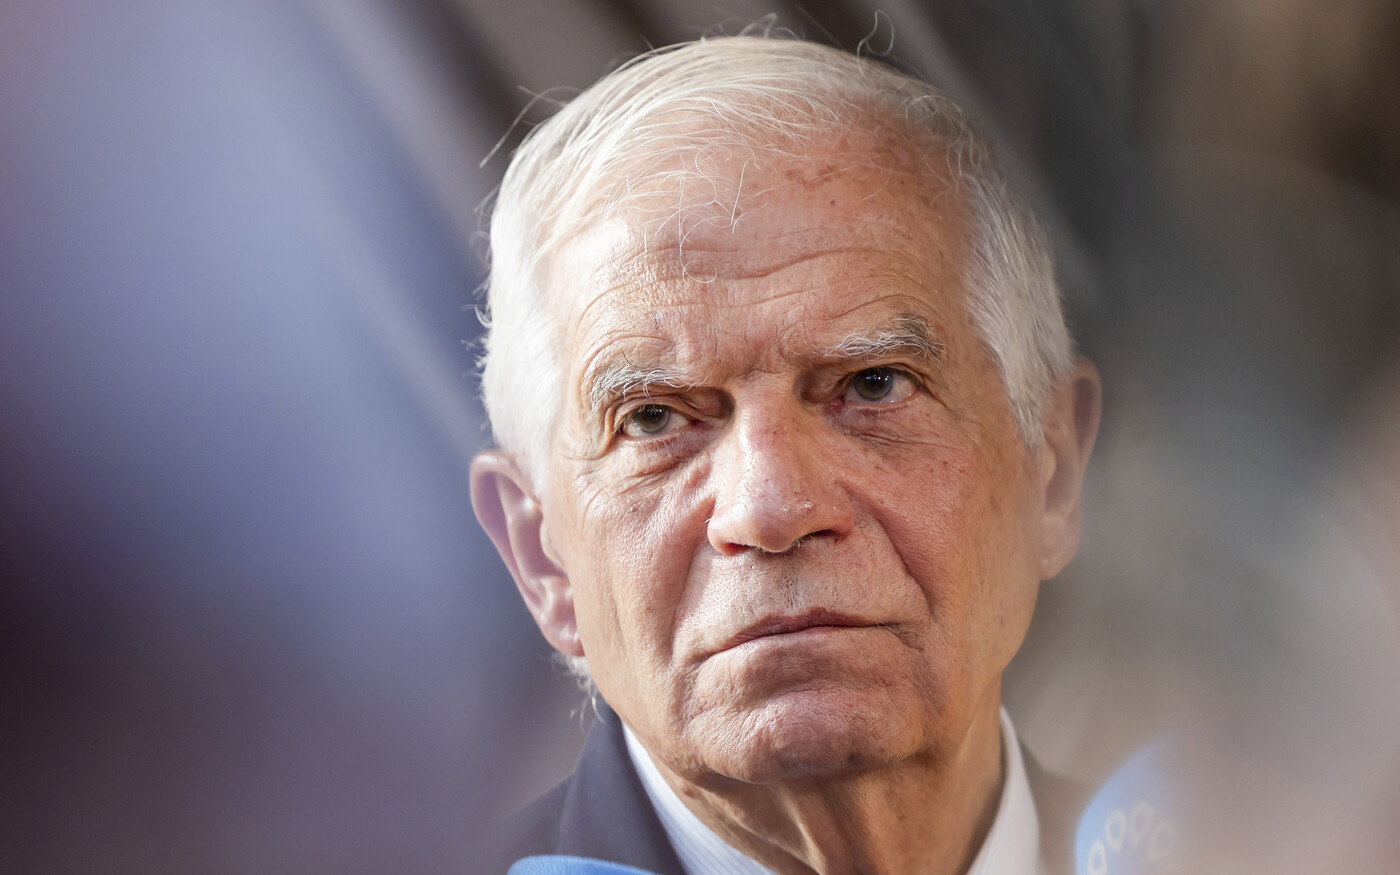 Josep Borrell az Izrael és a Hamász között dúló harcok azonnali beszüntetését sürgette